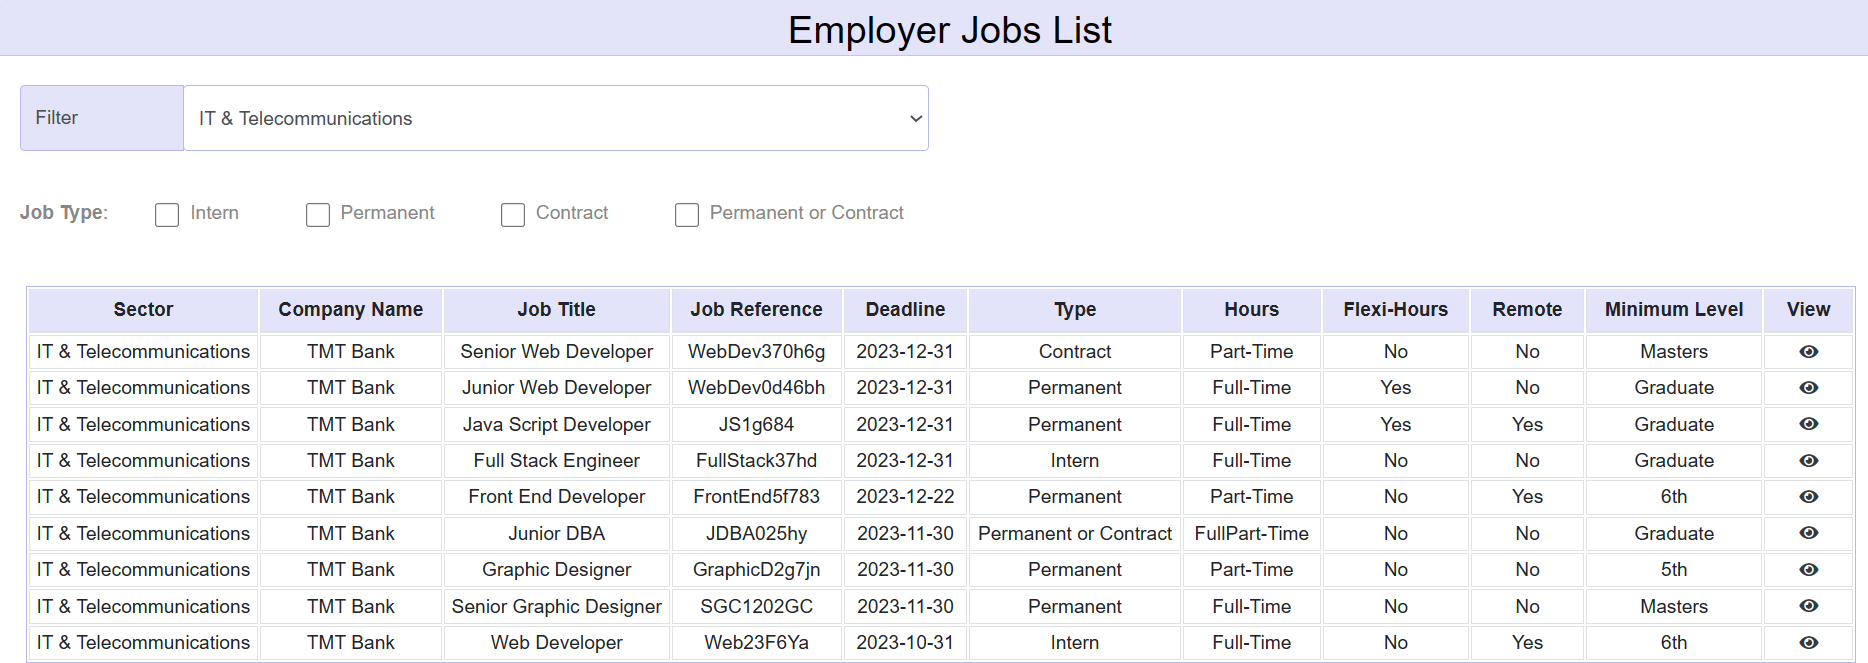 ecomm-employer-job-list